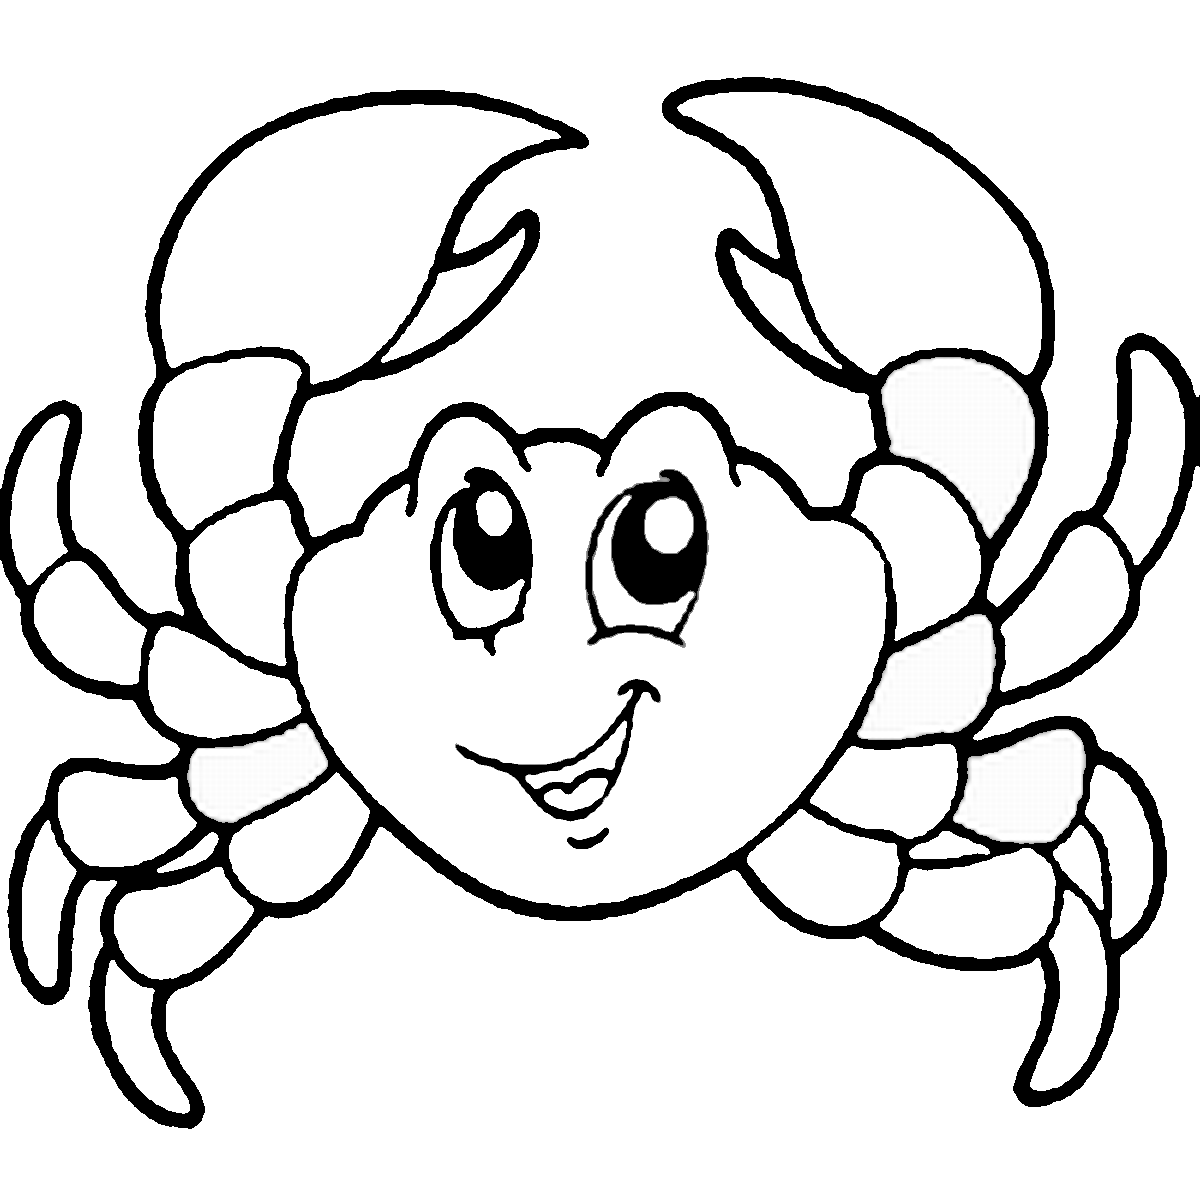 Cartoon Crab Coloring Page Outline Sketch Drawing Vector Cartoon Crab ...